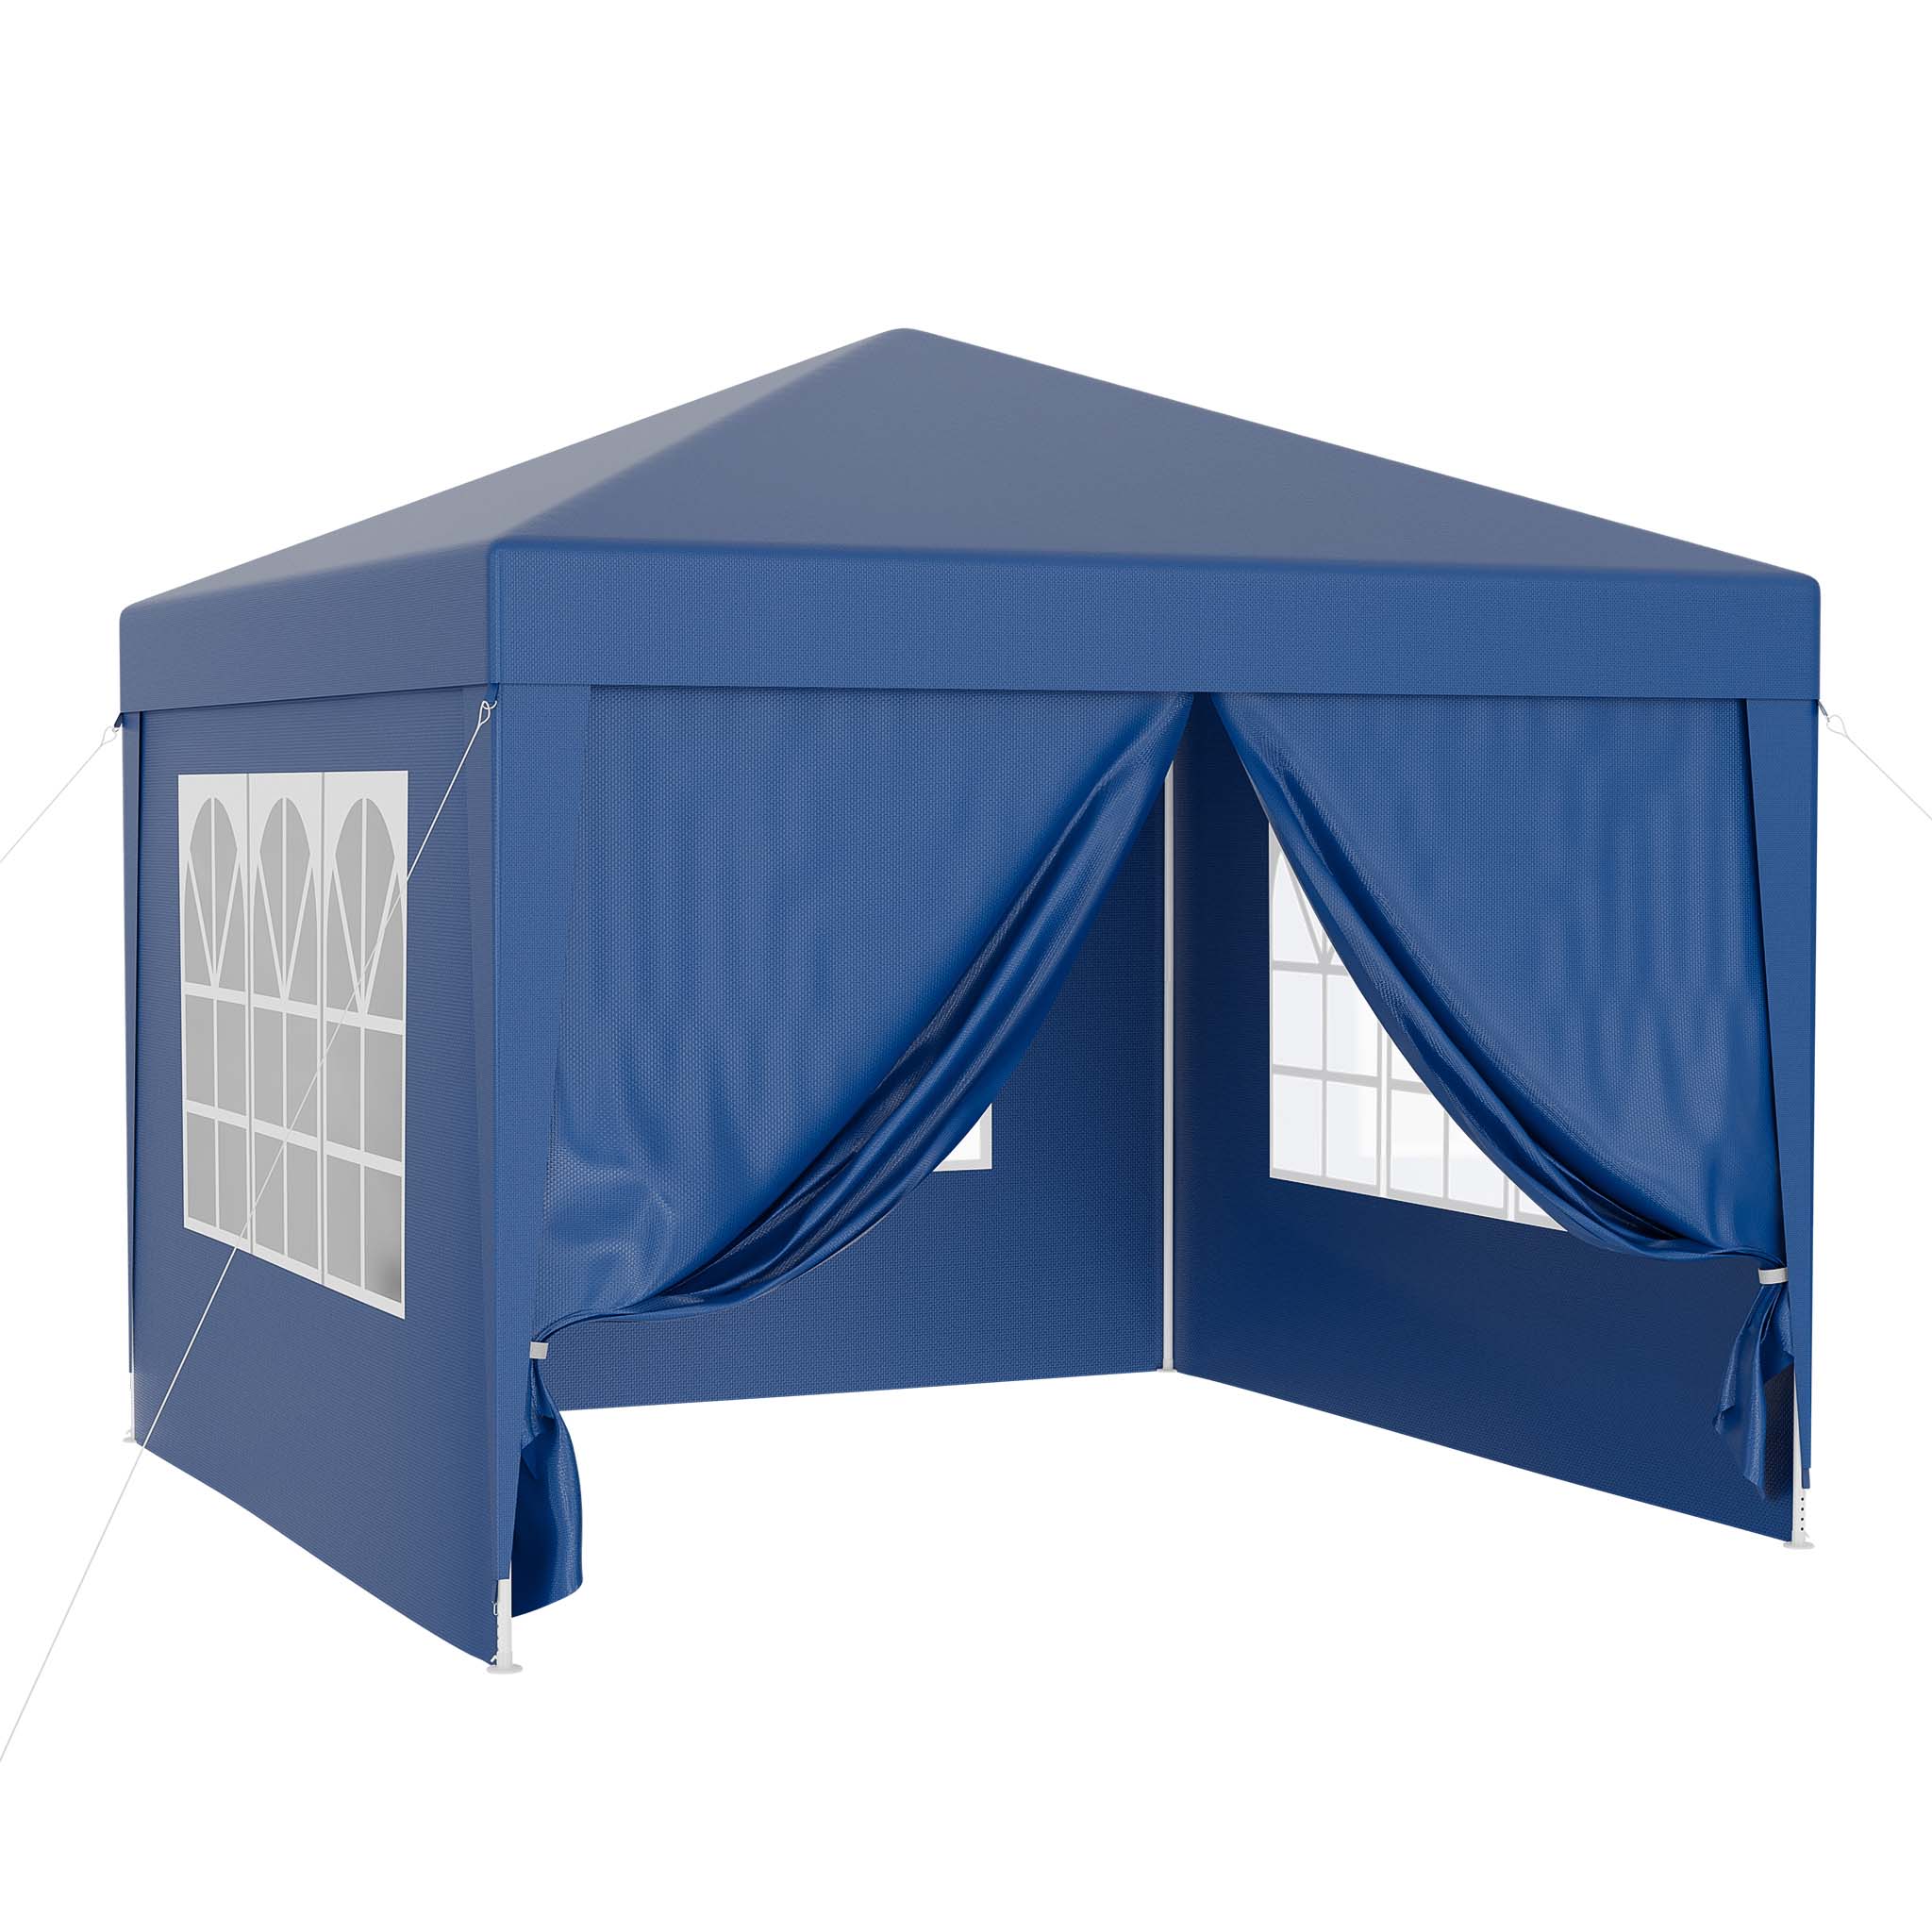 Tente de Jardin Pliable Bleue de 3x3m, avec Sac de Transport